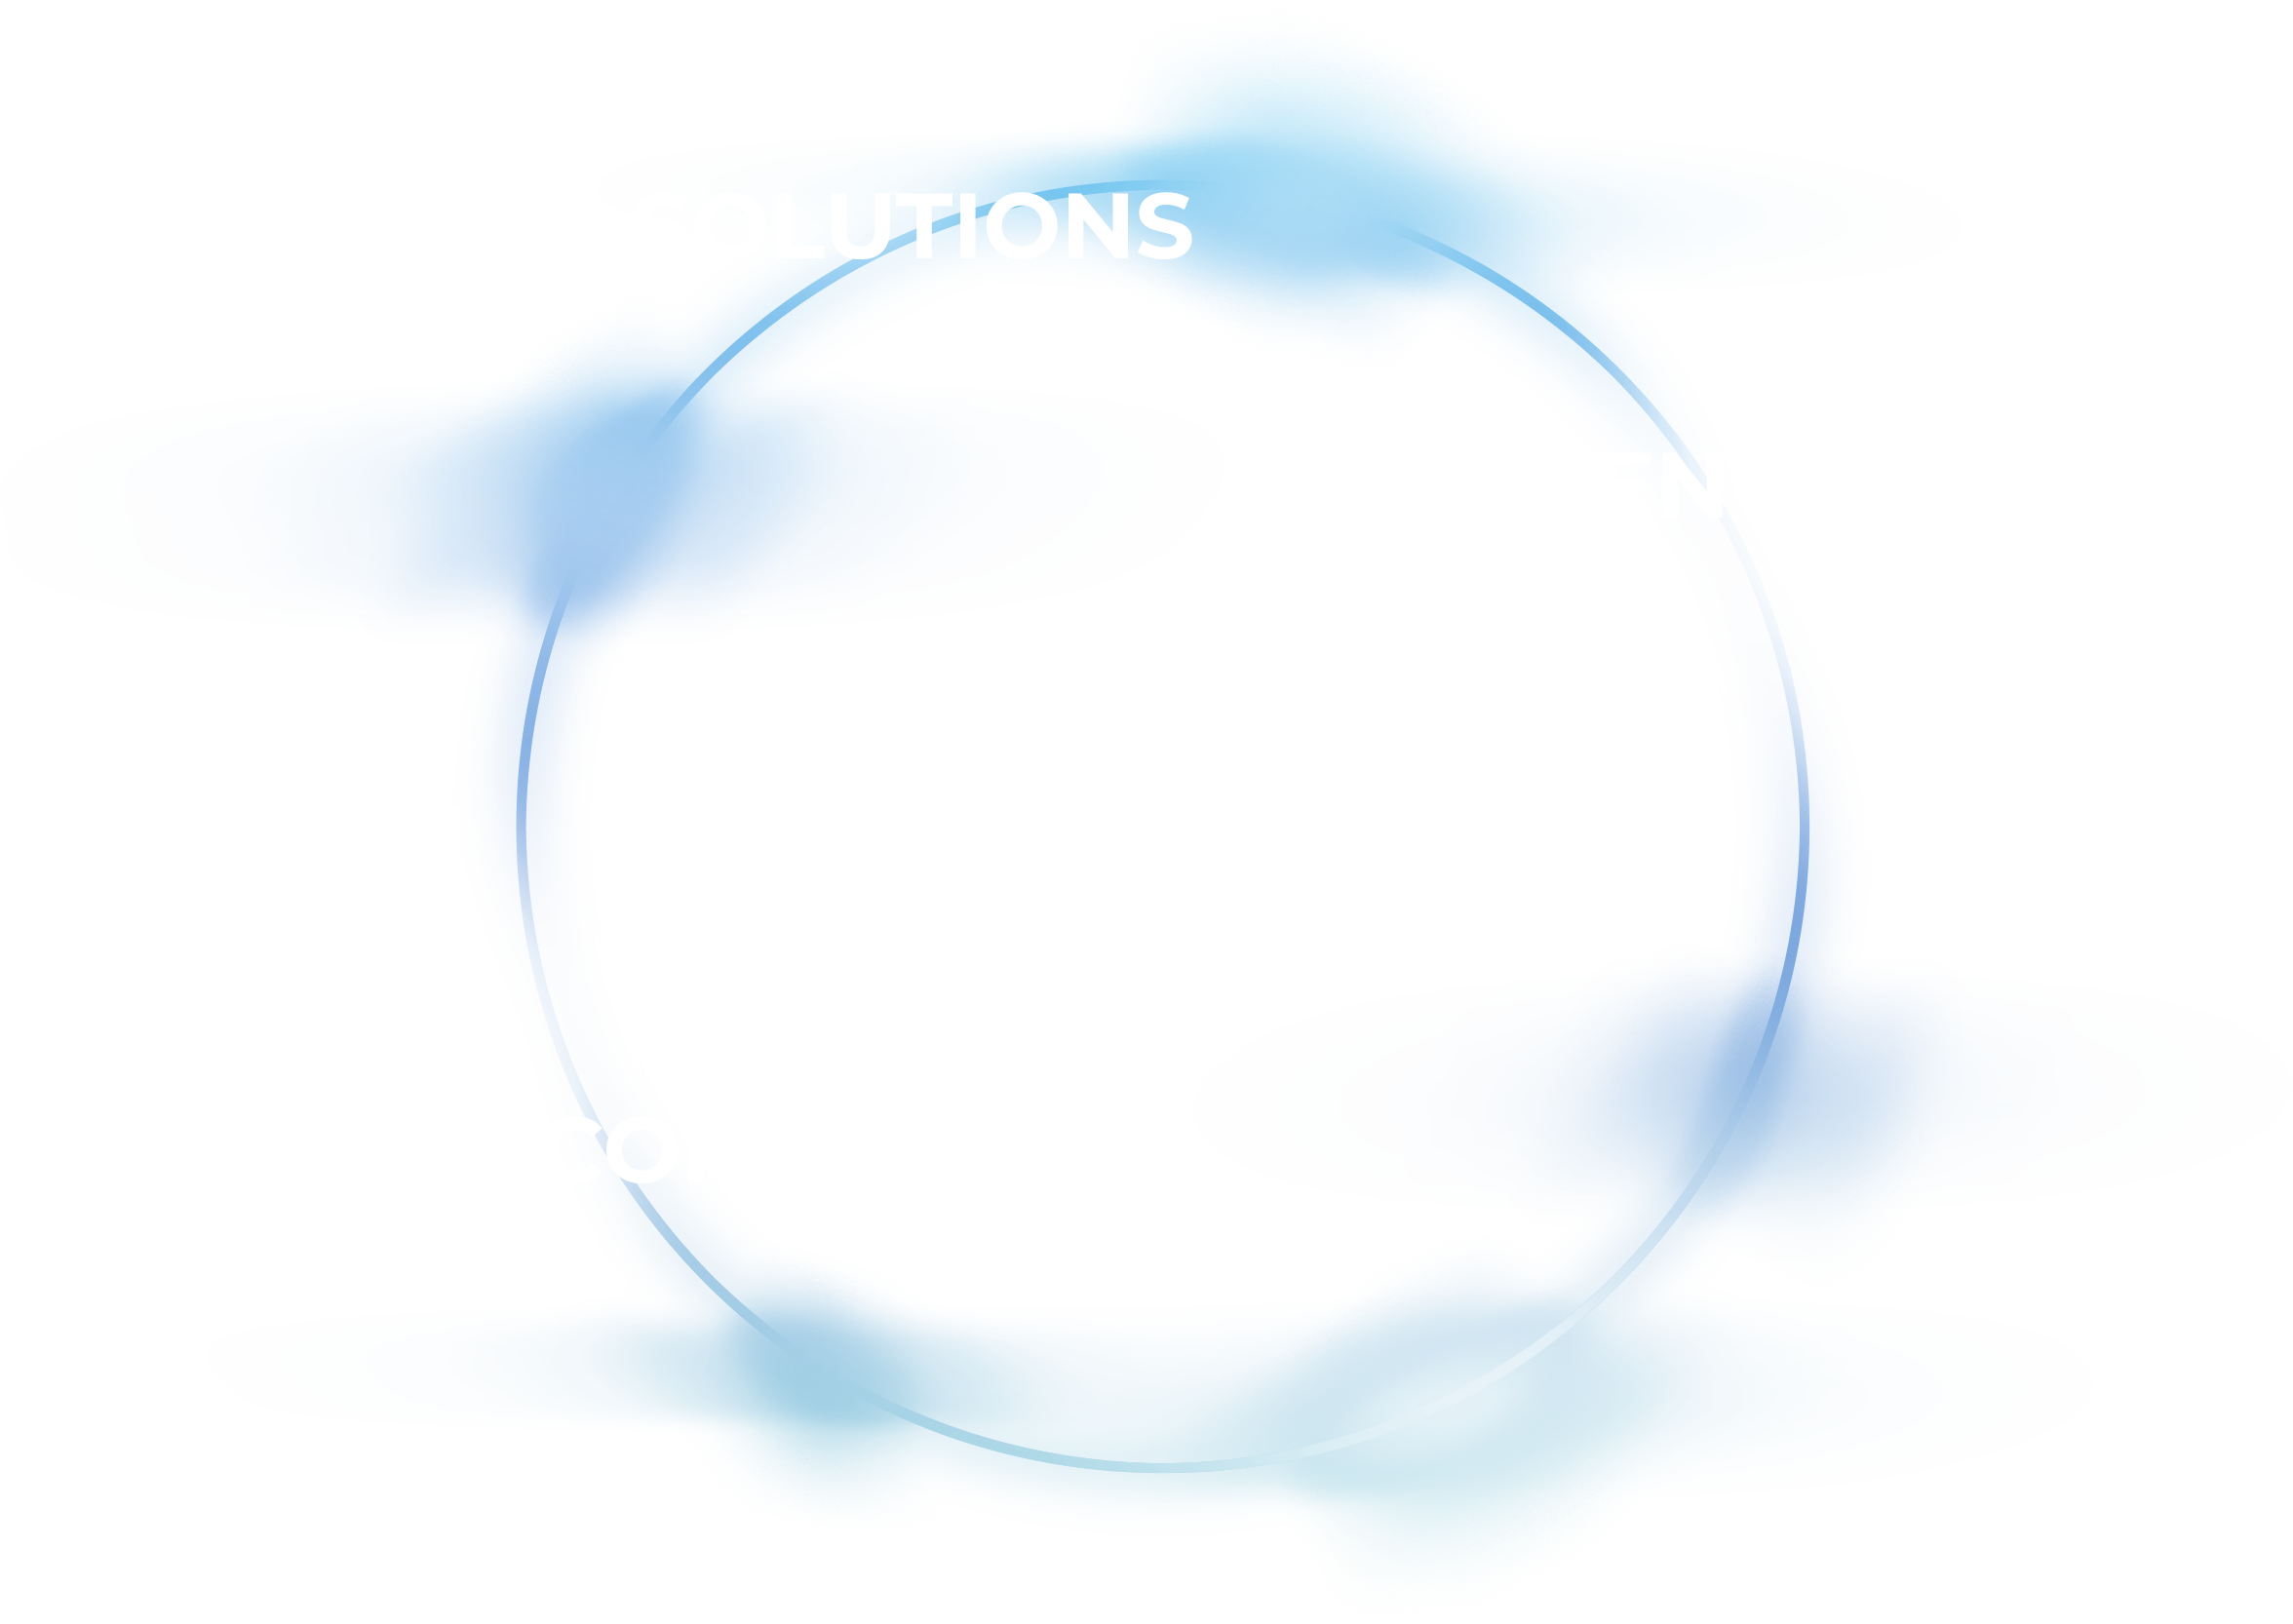 Ein effizientes und transparentes cloud-basiertes SAP-Beschaffungssystem für Konzerne und Mittelständler. Das System bedient vorhandene ERP-Systeme in Echtzeit und basiert auf über 20 Jahren Erfahrung mit SAP.